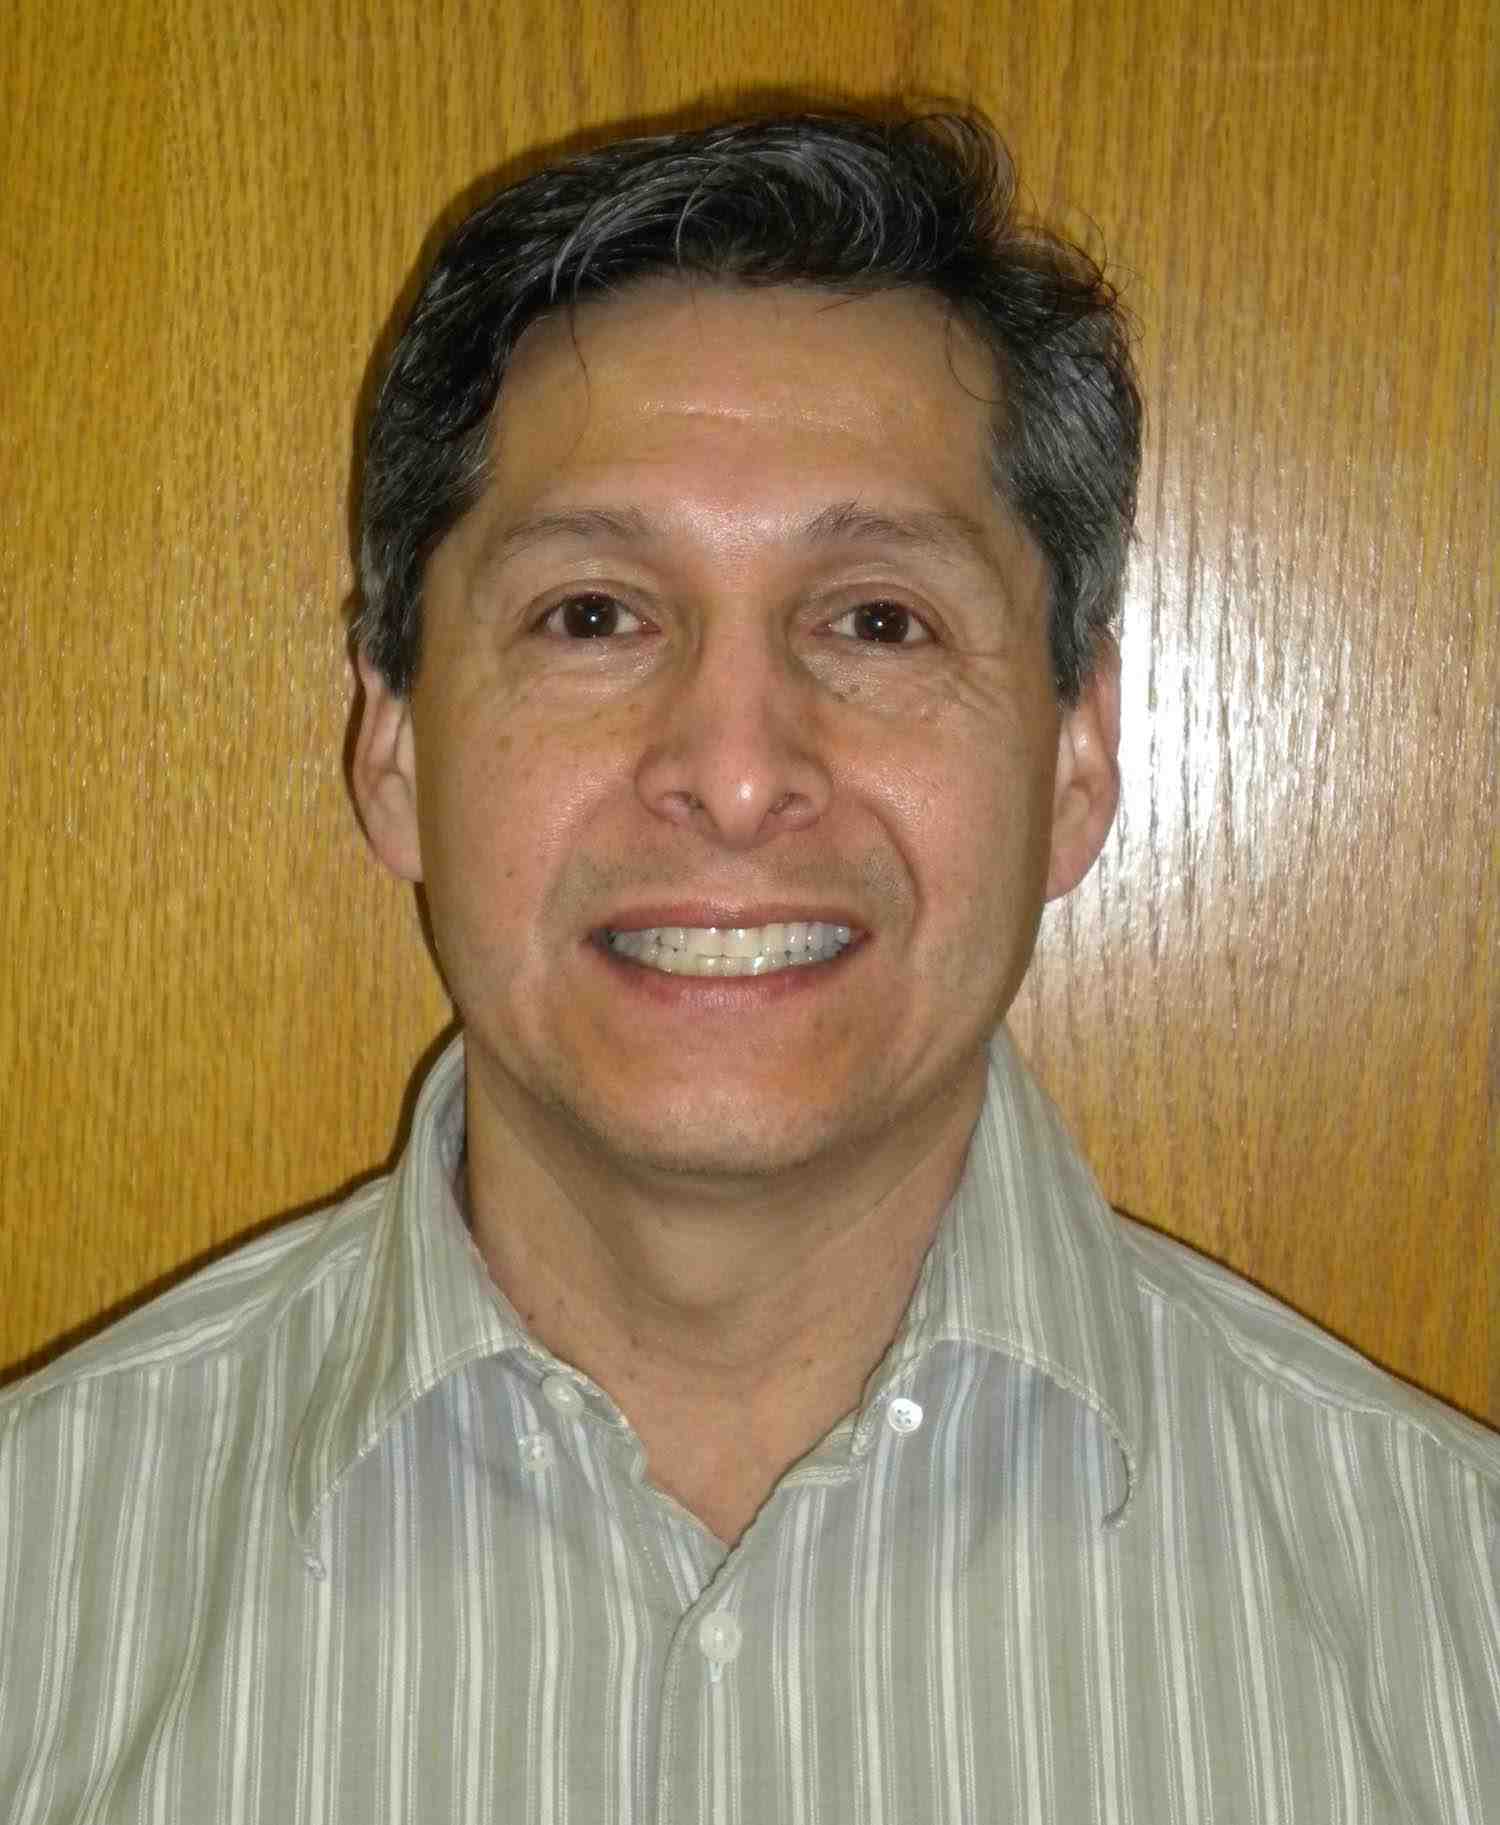 Charles Hernandez